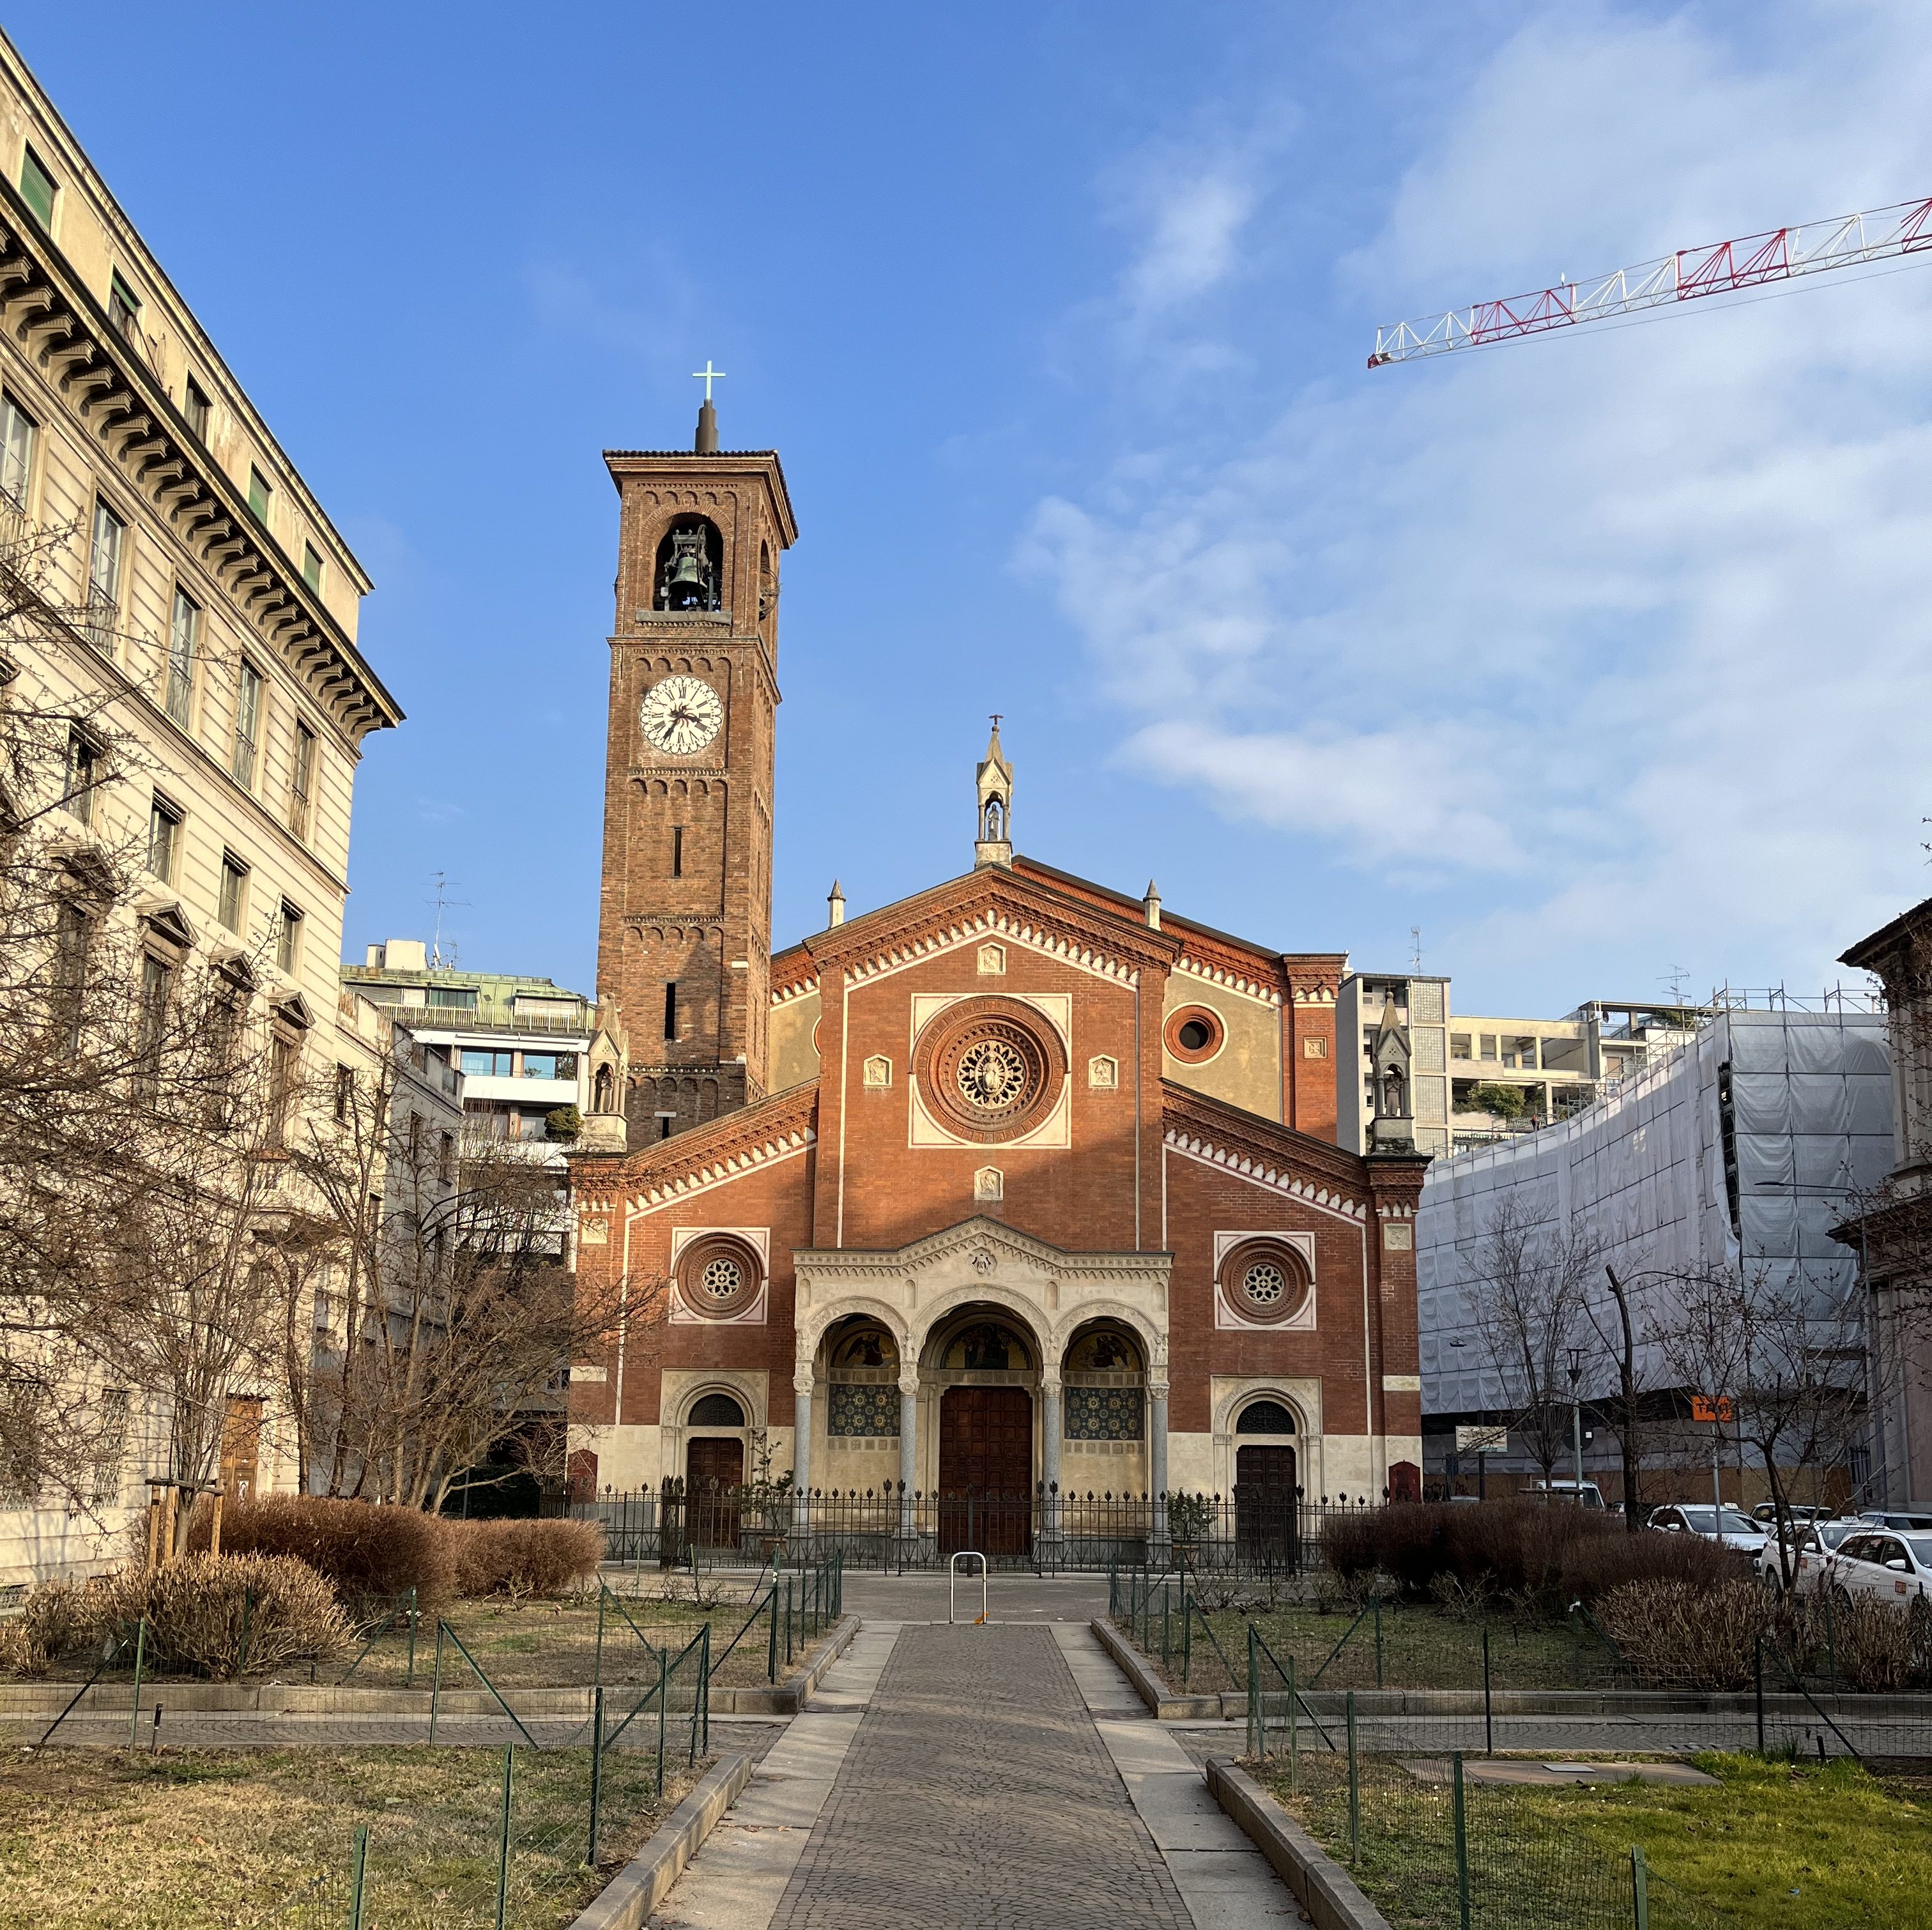 Foto von einer Kirche in Mailand im Sonnenlicht